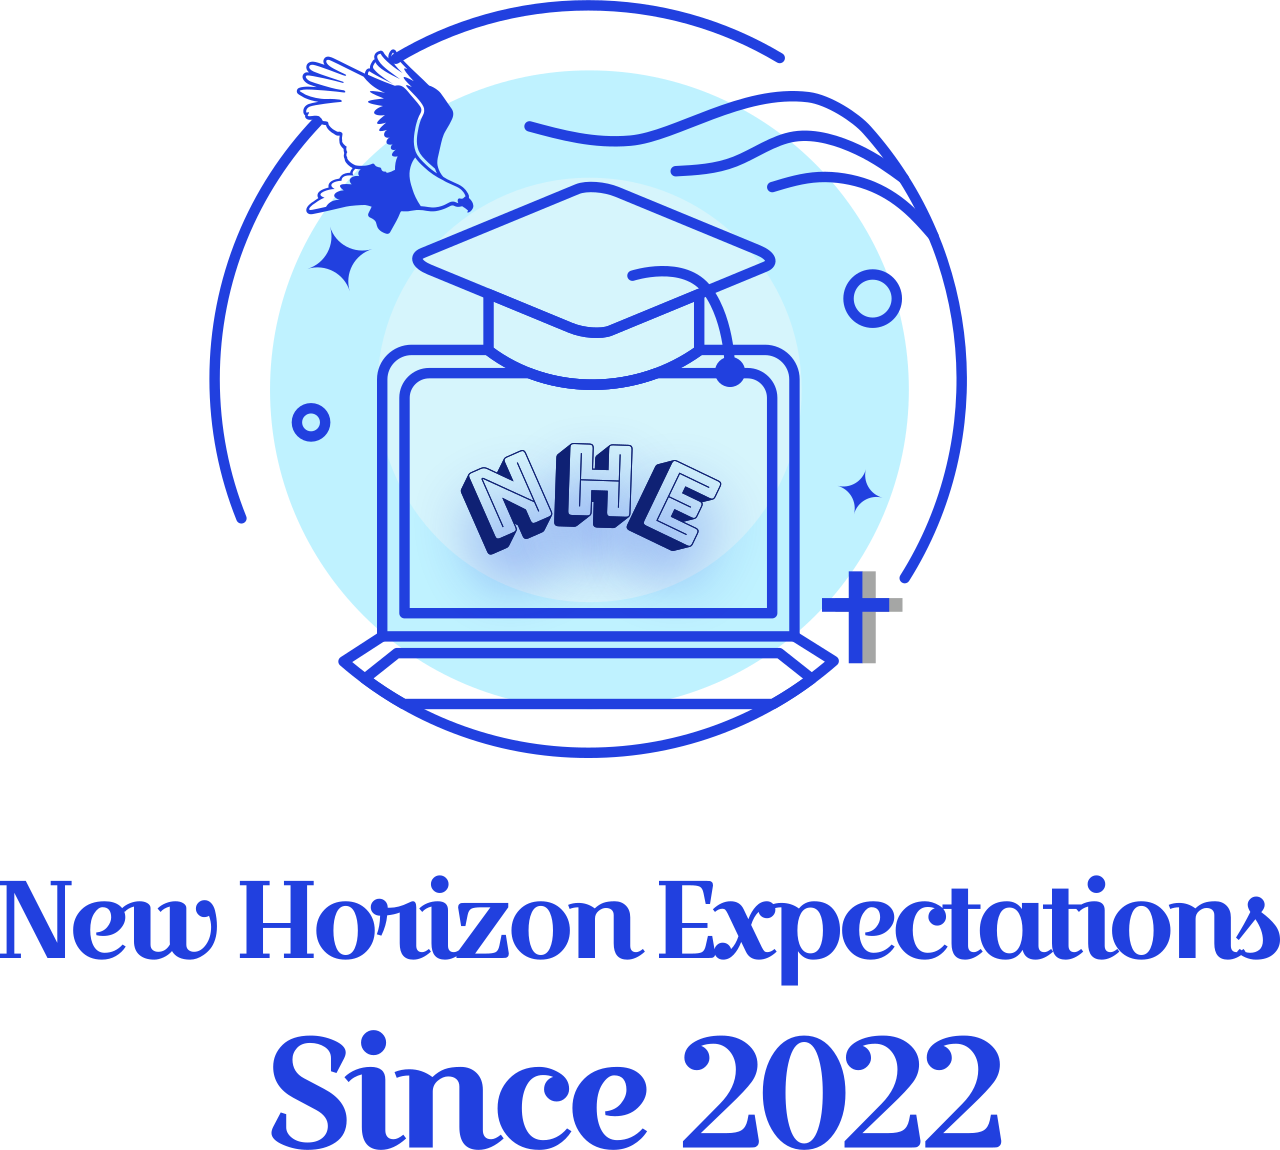 New Horizon Expectations's logo